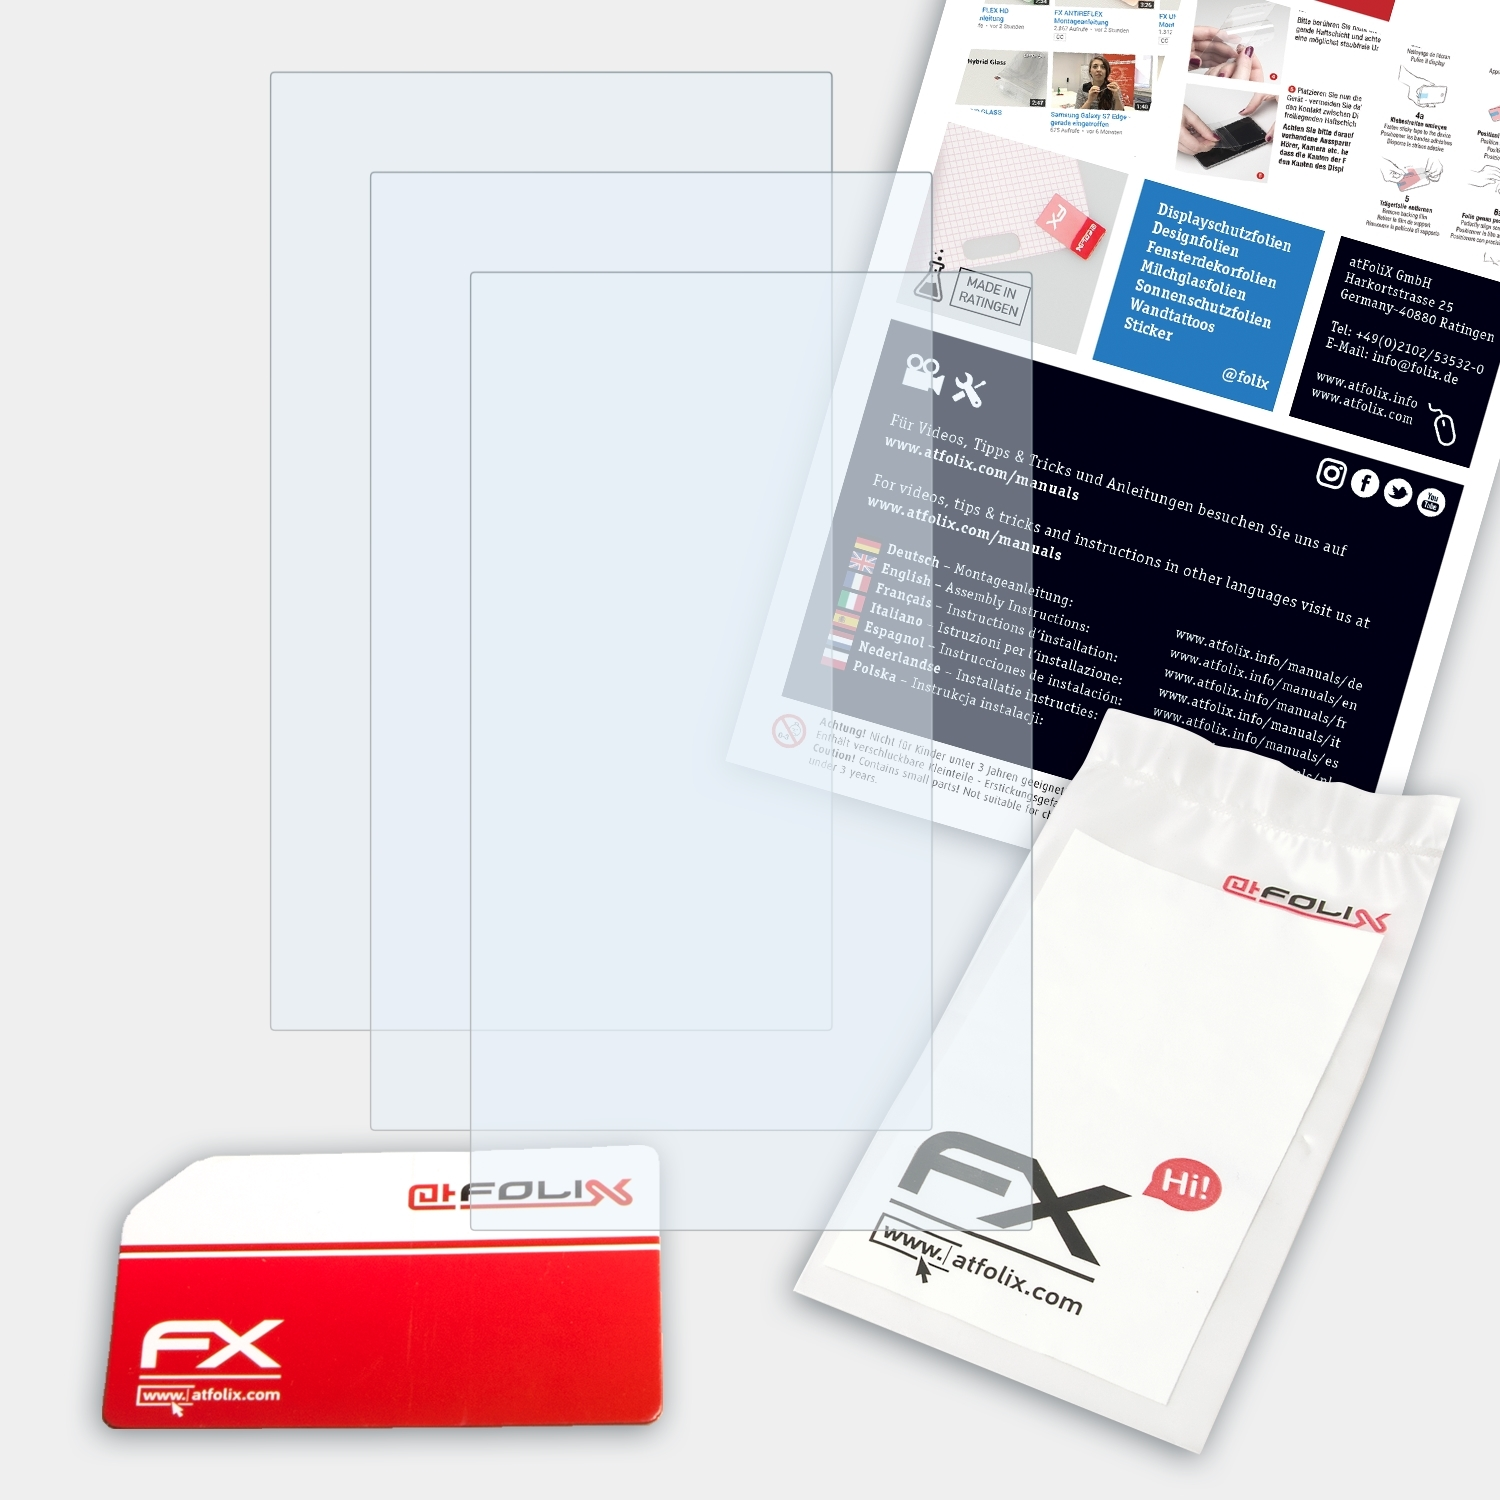 ATFOLIX 3x FX-Clear XDP-30R) Pioneer Displayschutz(für